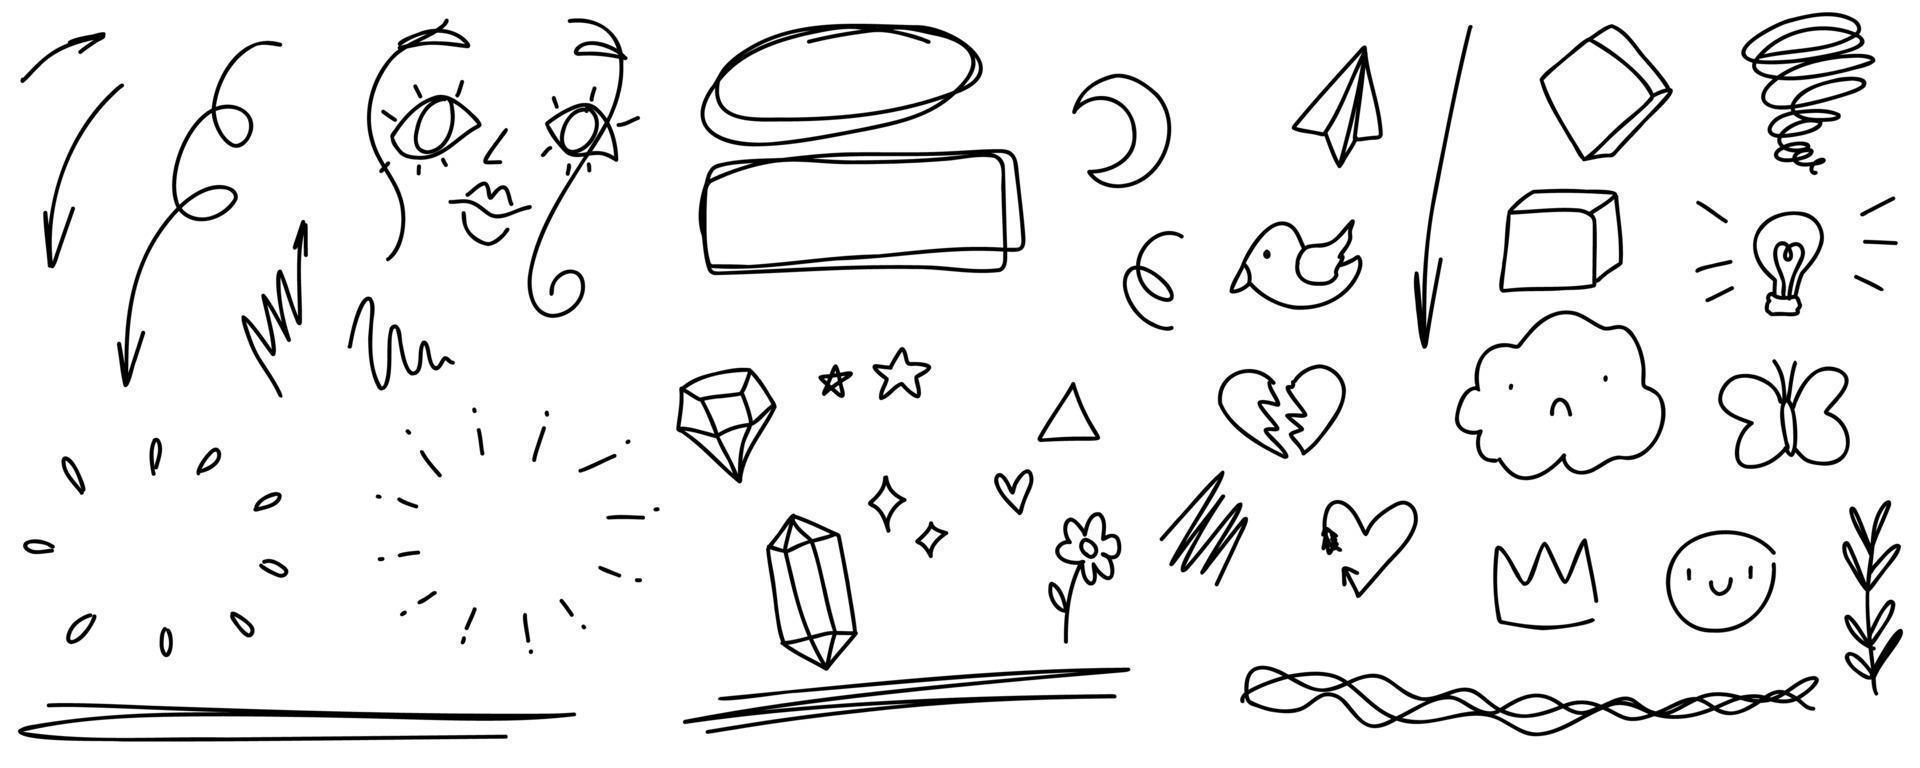 baby doodles rahmen, pfeile, gesicht, sterne, herz, kristalle. skizzensatz niedliches kritzeln isolierte liniensammlung. vektor